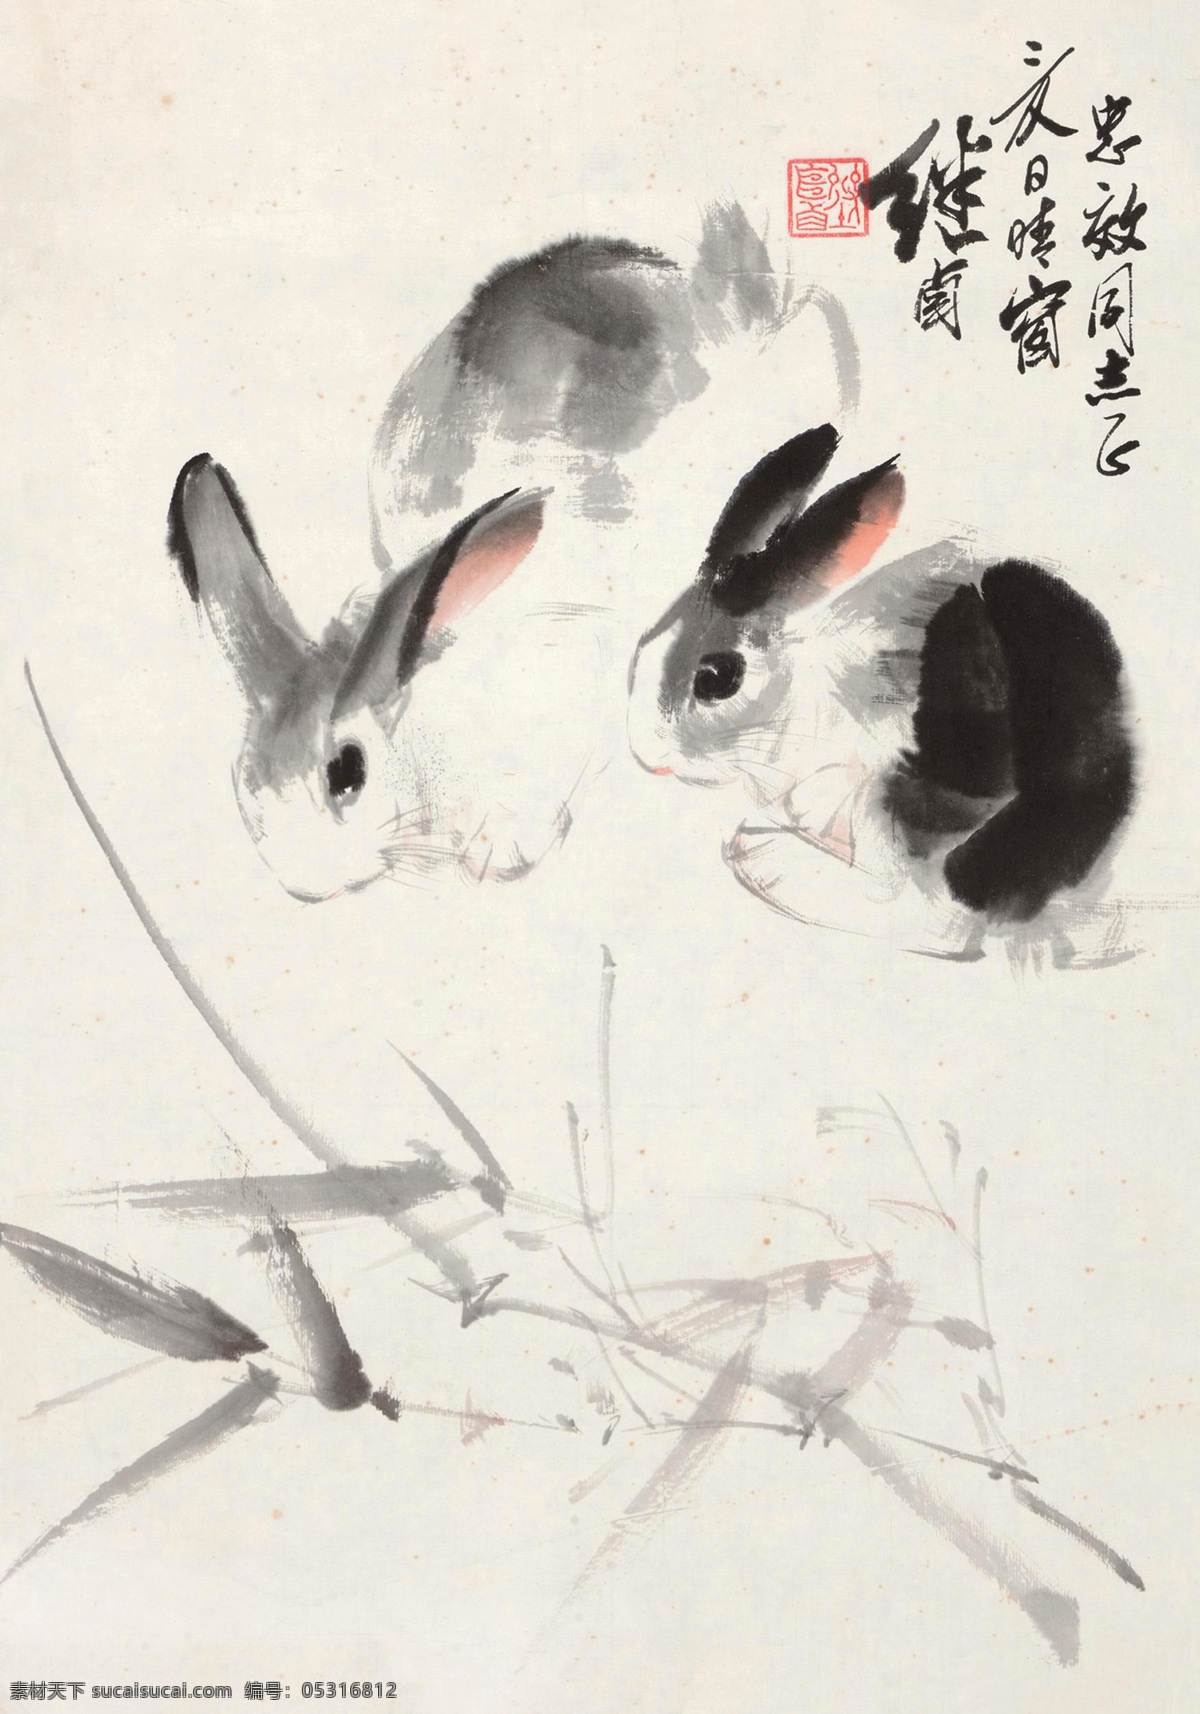 双兔 刘继卣 国画 兔子 灰兔 动物 水墨画 中国画 绘画书法 文化艺术